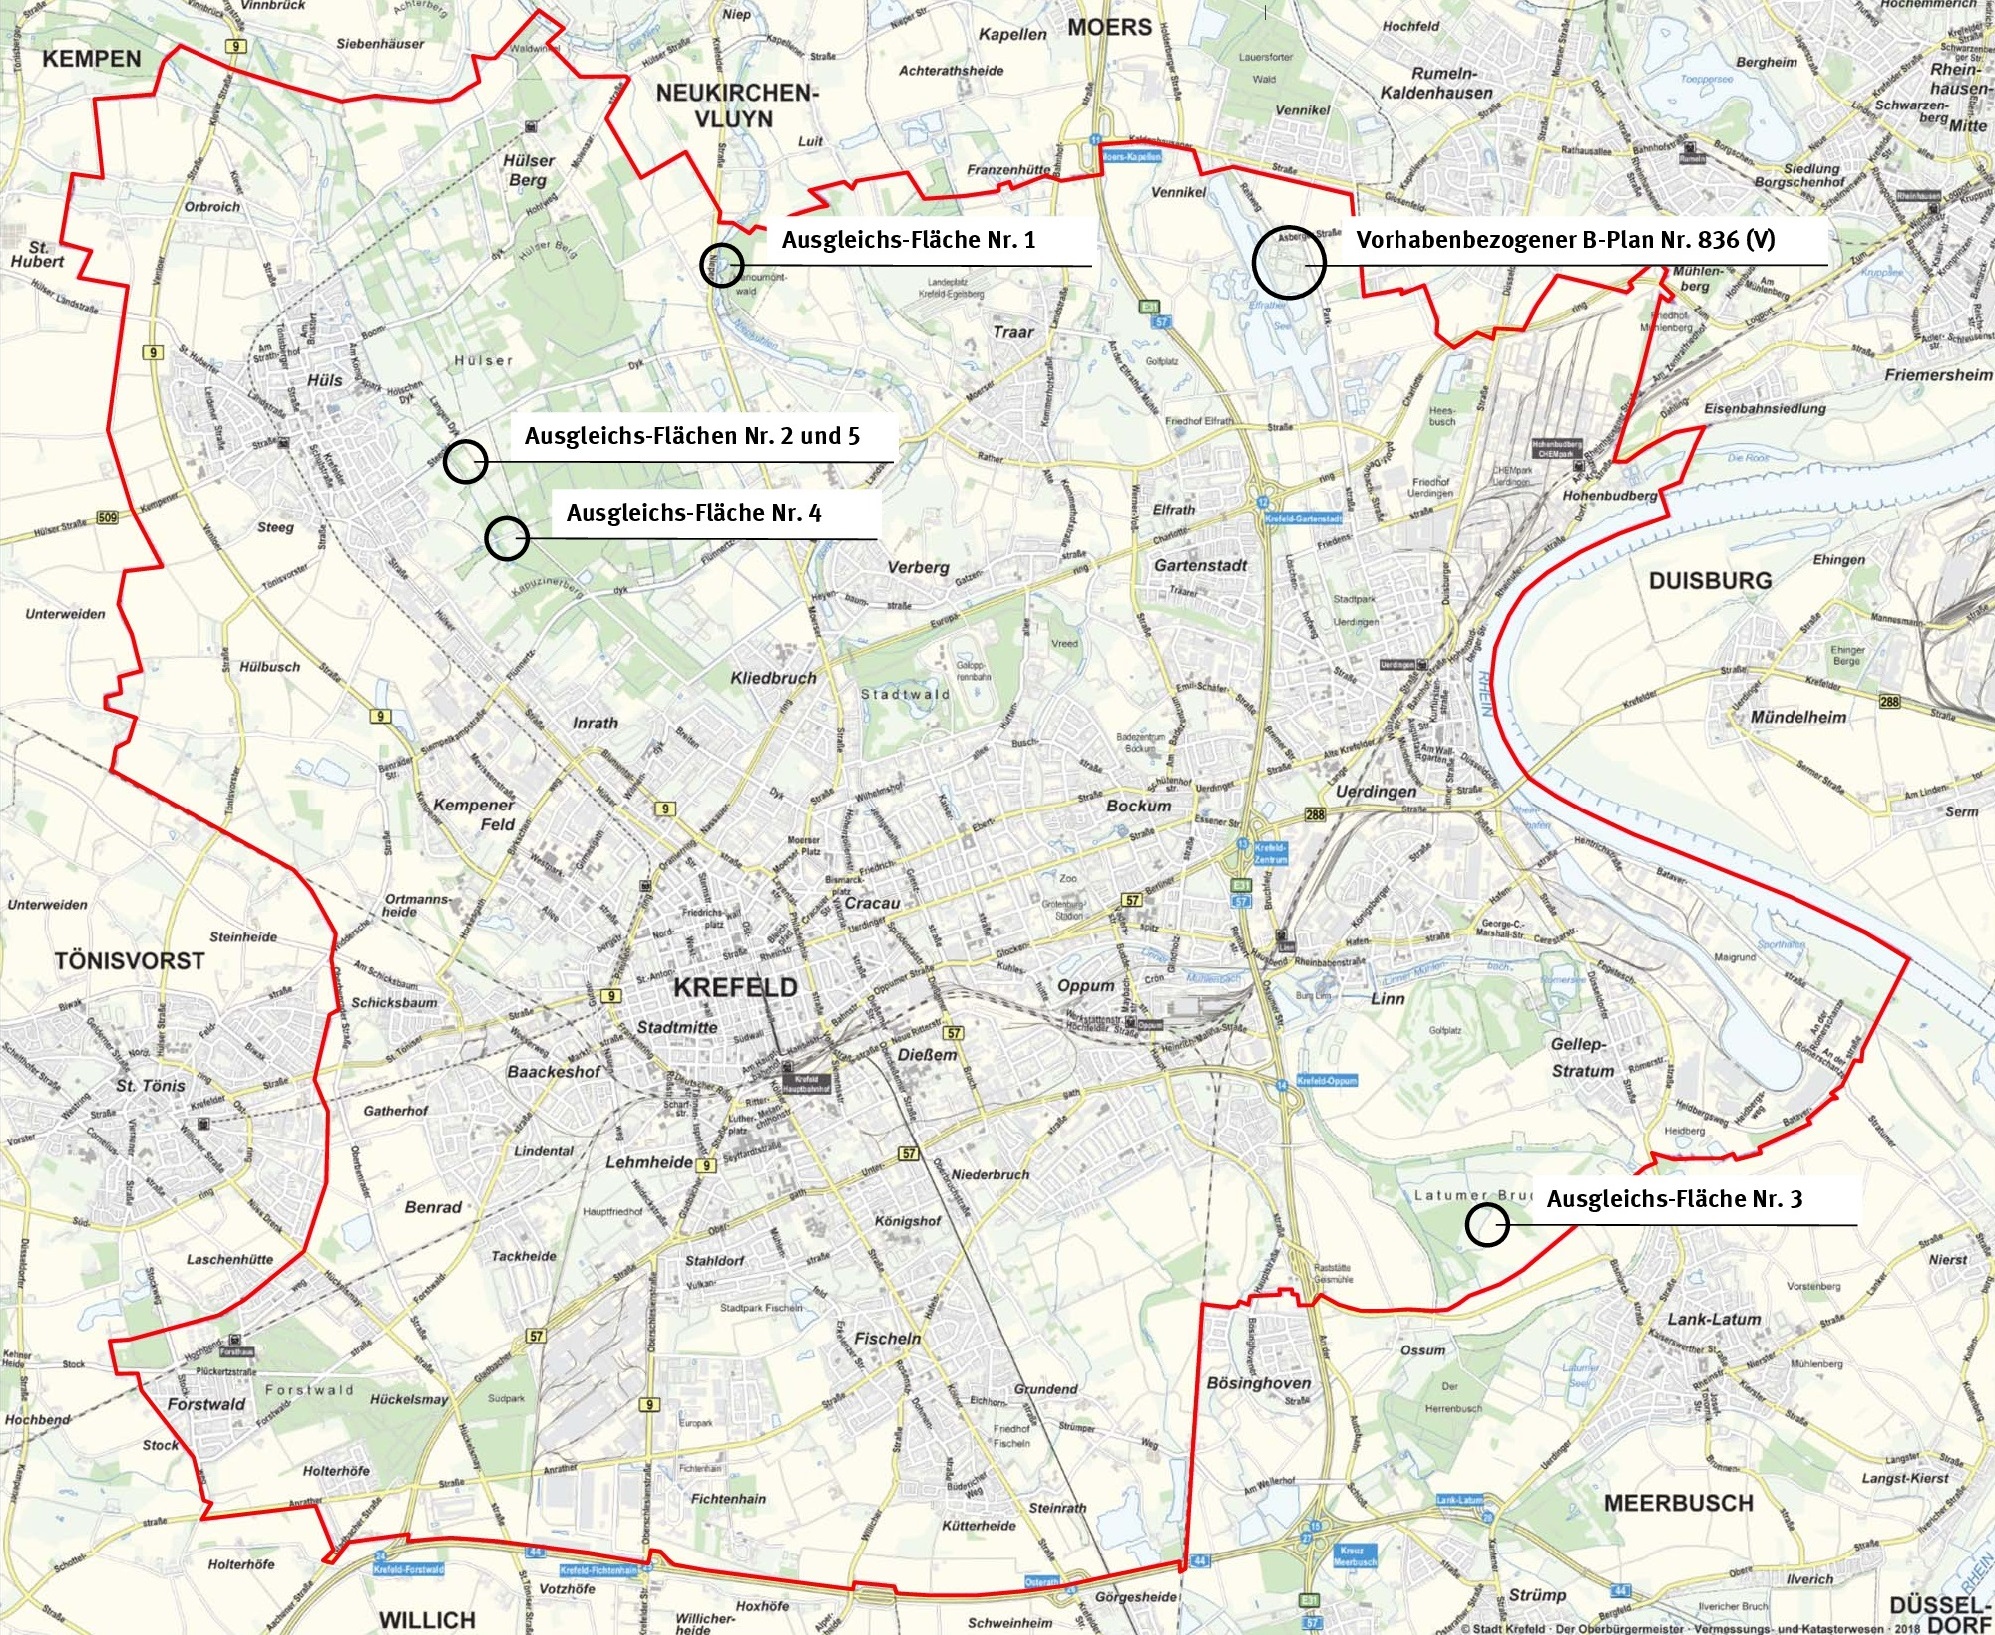 Vorhabenbezogener Bebauungsplan 836 (V) in der Stadtkarte